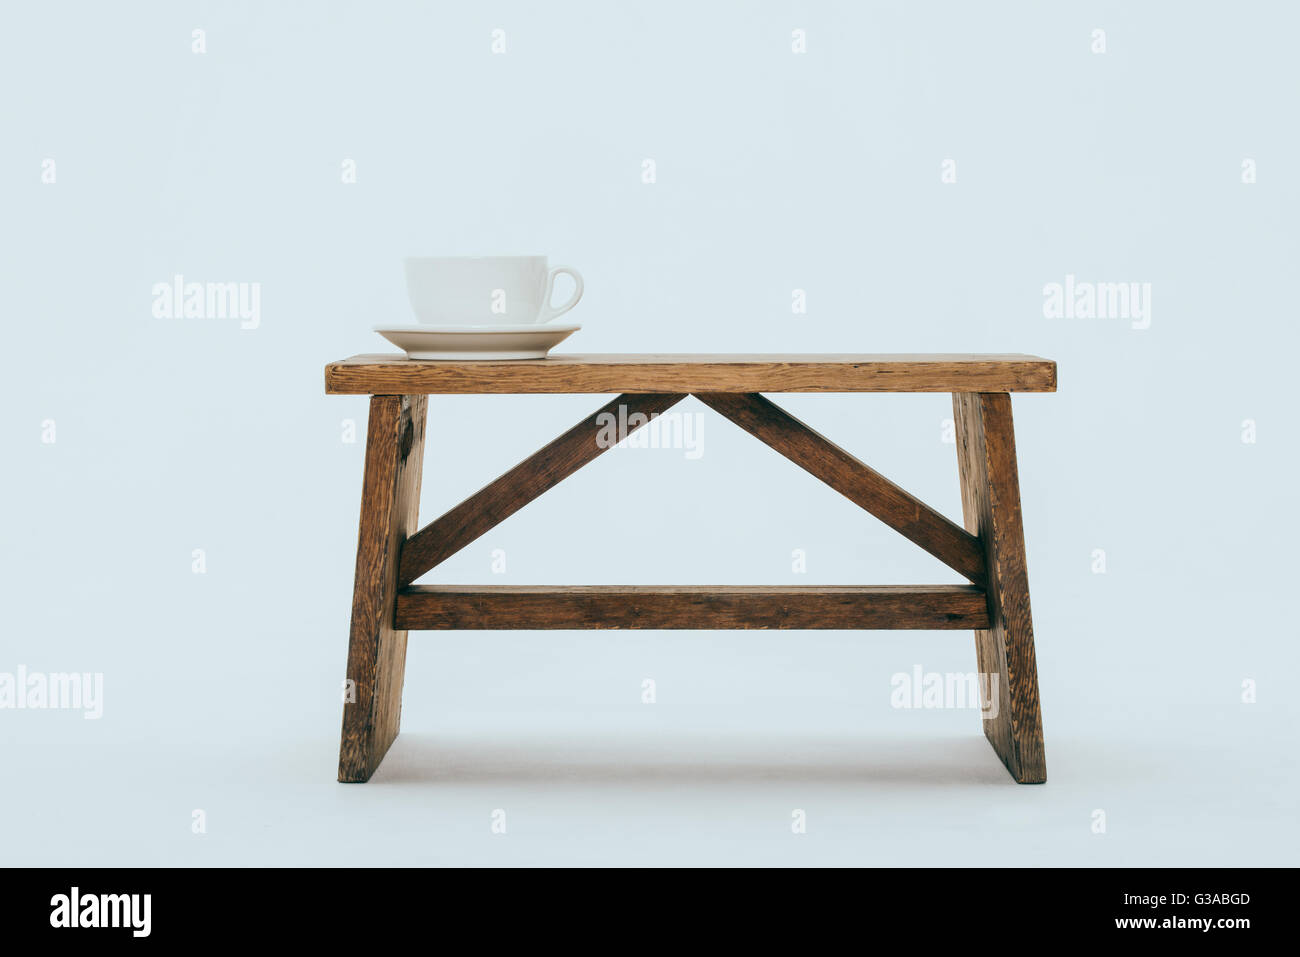 Stile di vita cafe cup sul banco, su sfondo bianco Foto Stock